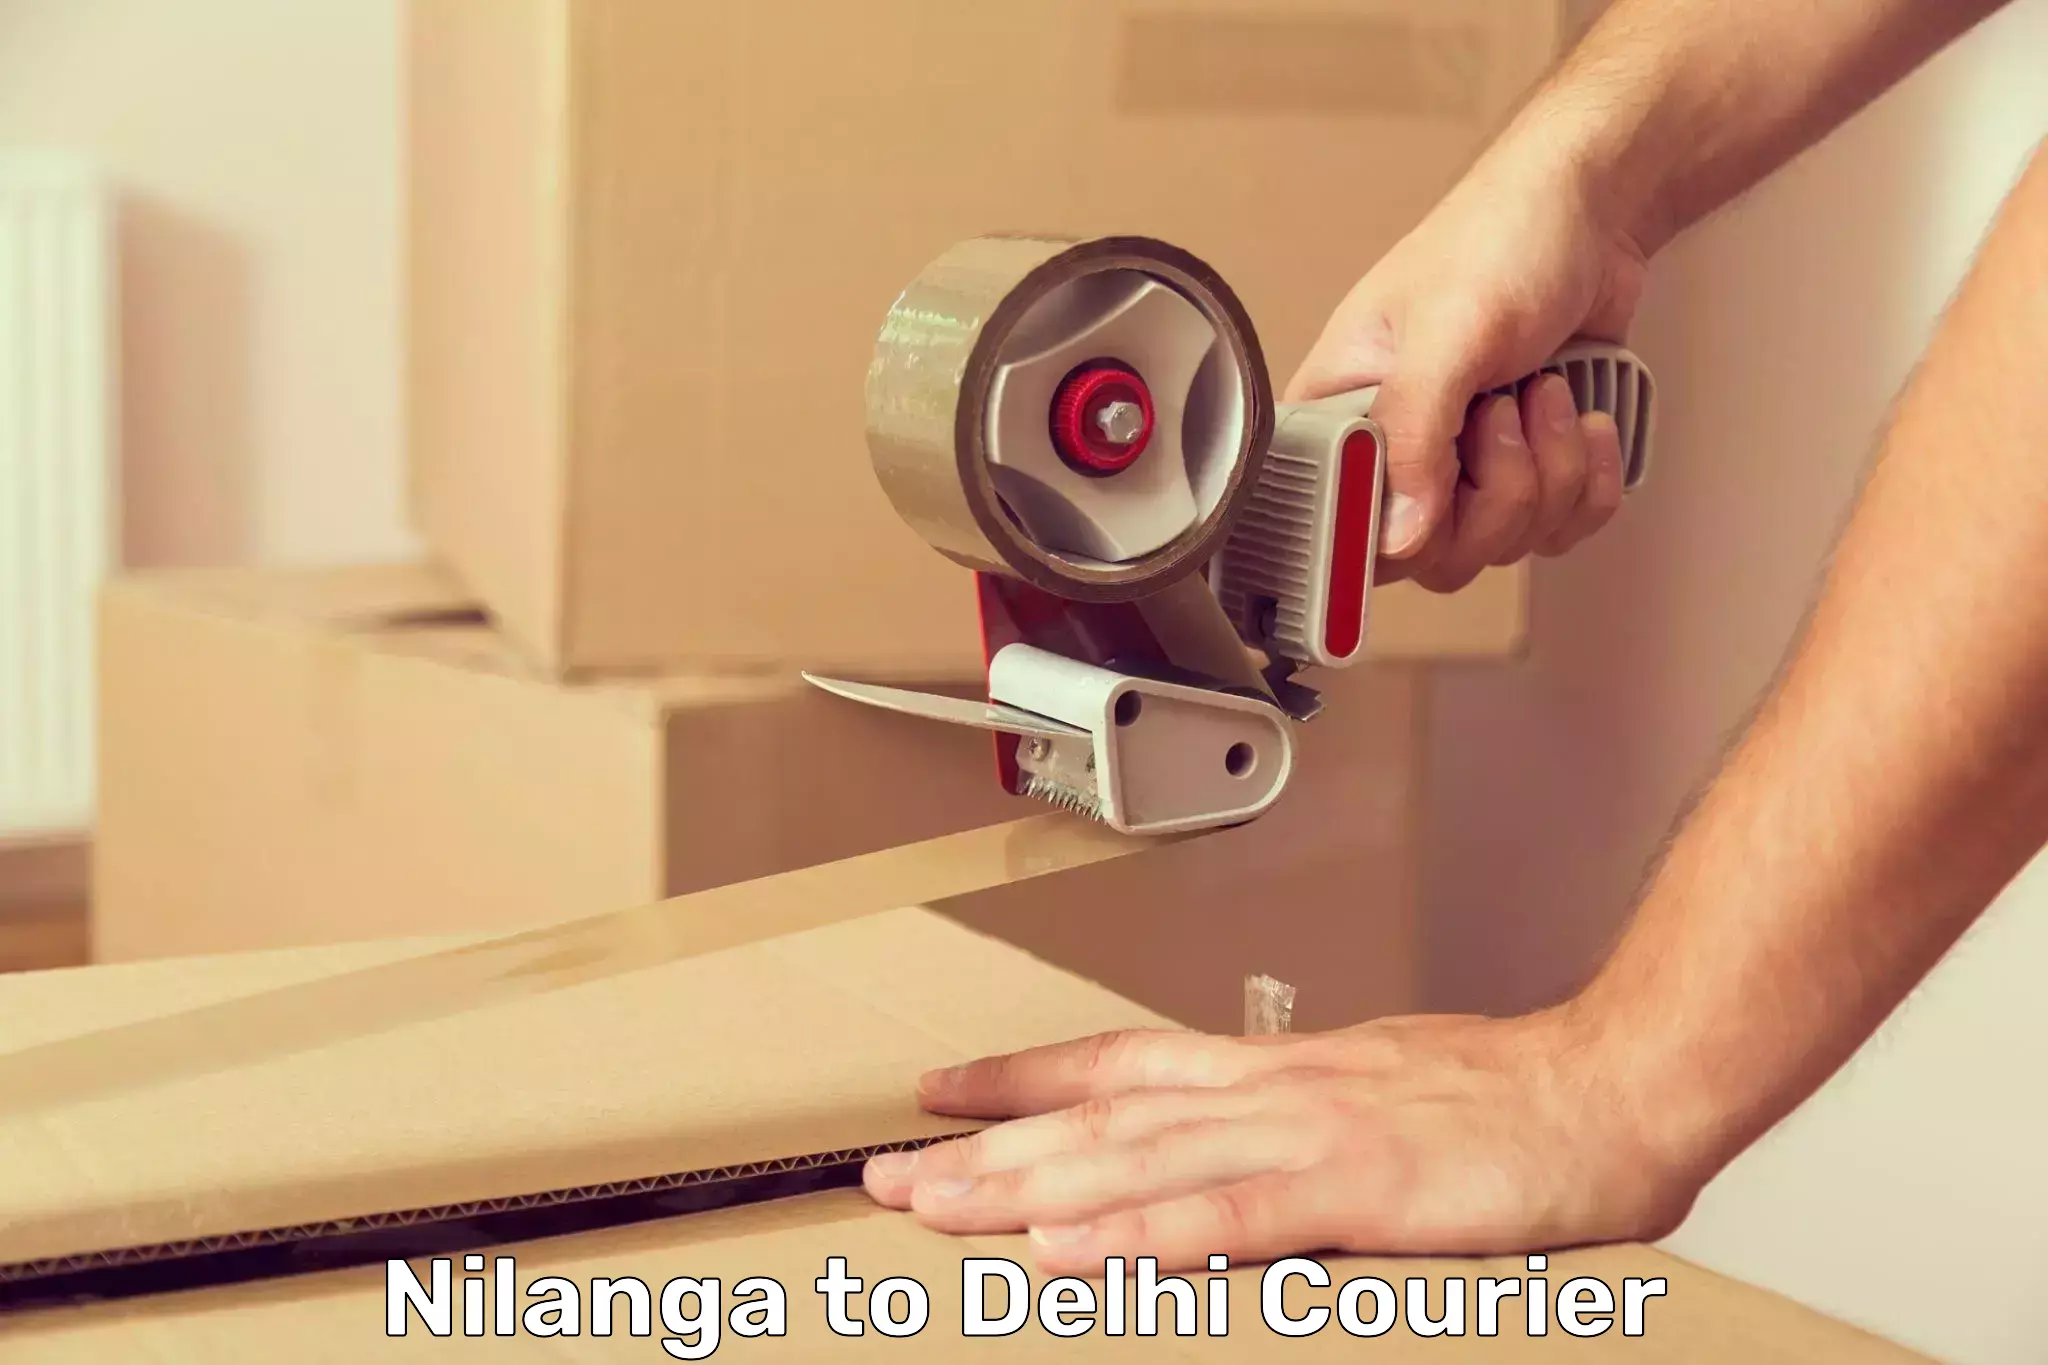 Next-day freight services Nilanga to IIT Delhi